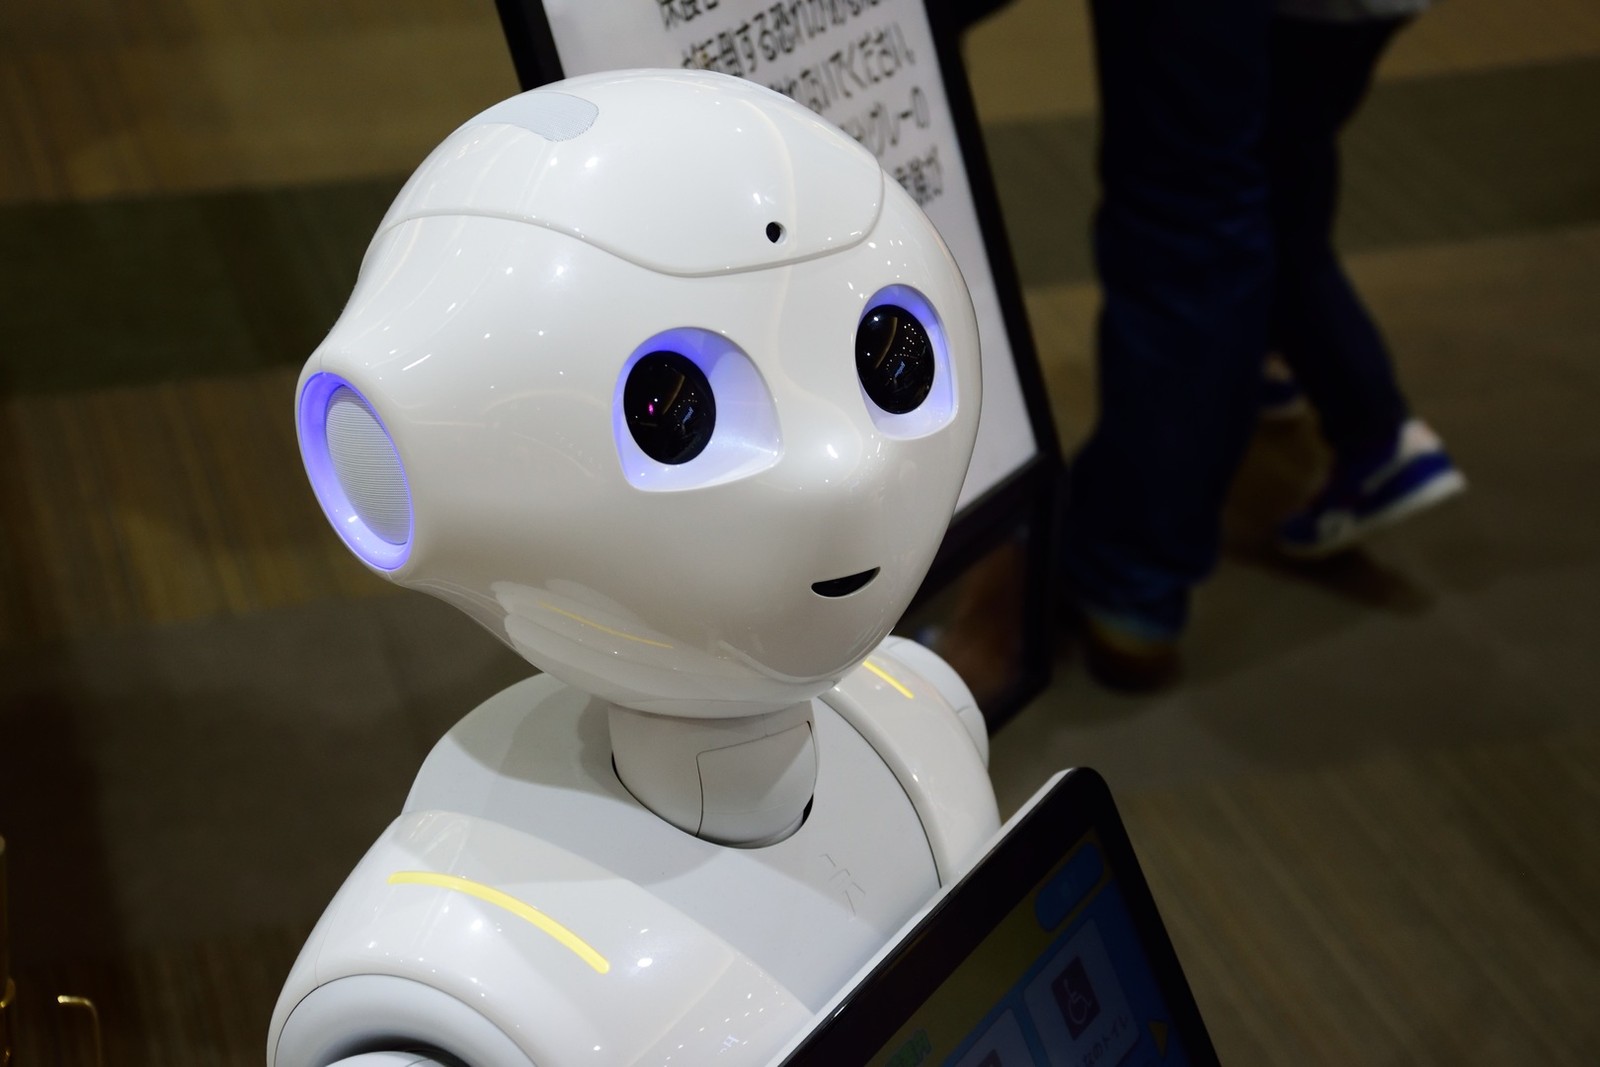 Chińczycy stawiają na masową produkcję robotów przypominających ludzi. Co planują?